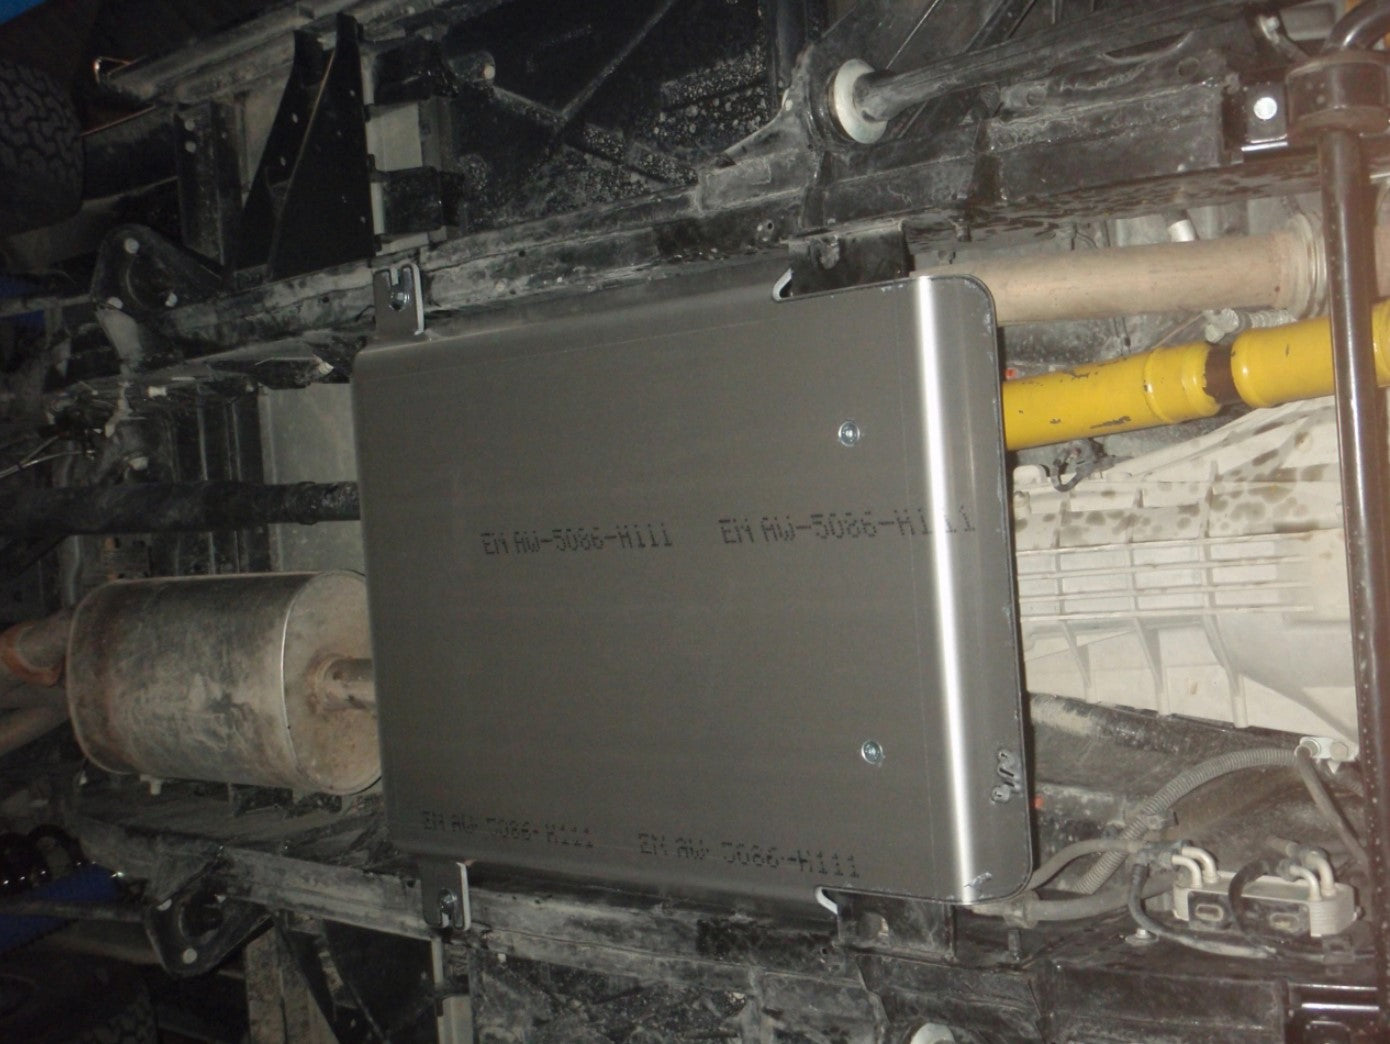 schermatura in alluminio fissata sotto un veicolo sporco per il cassone di trasferimento